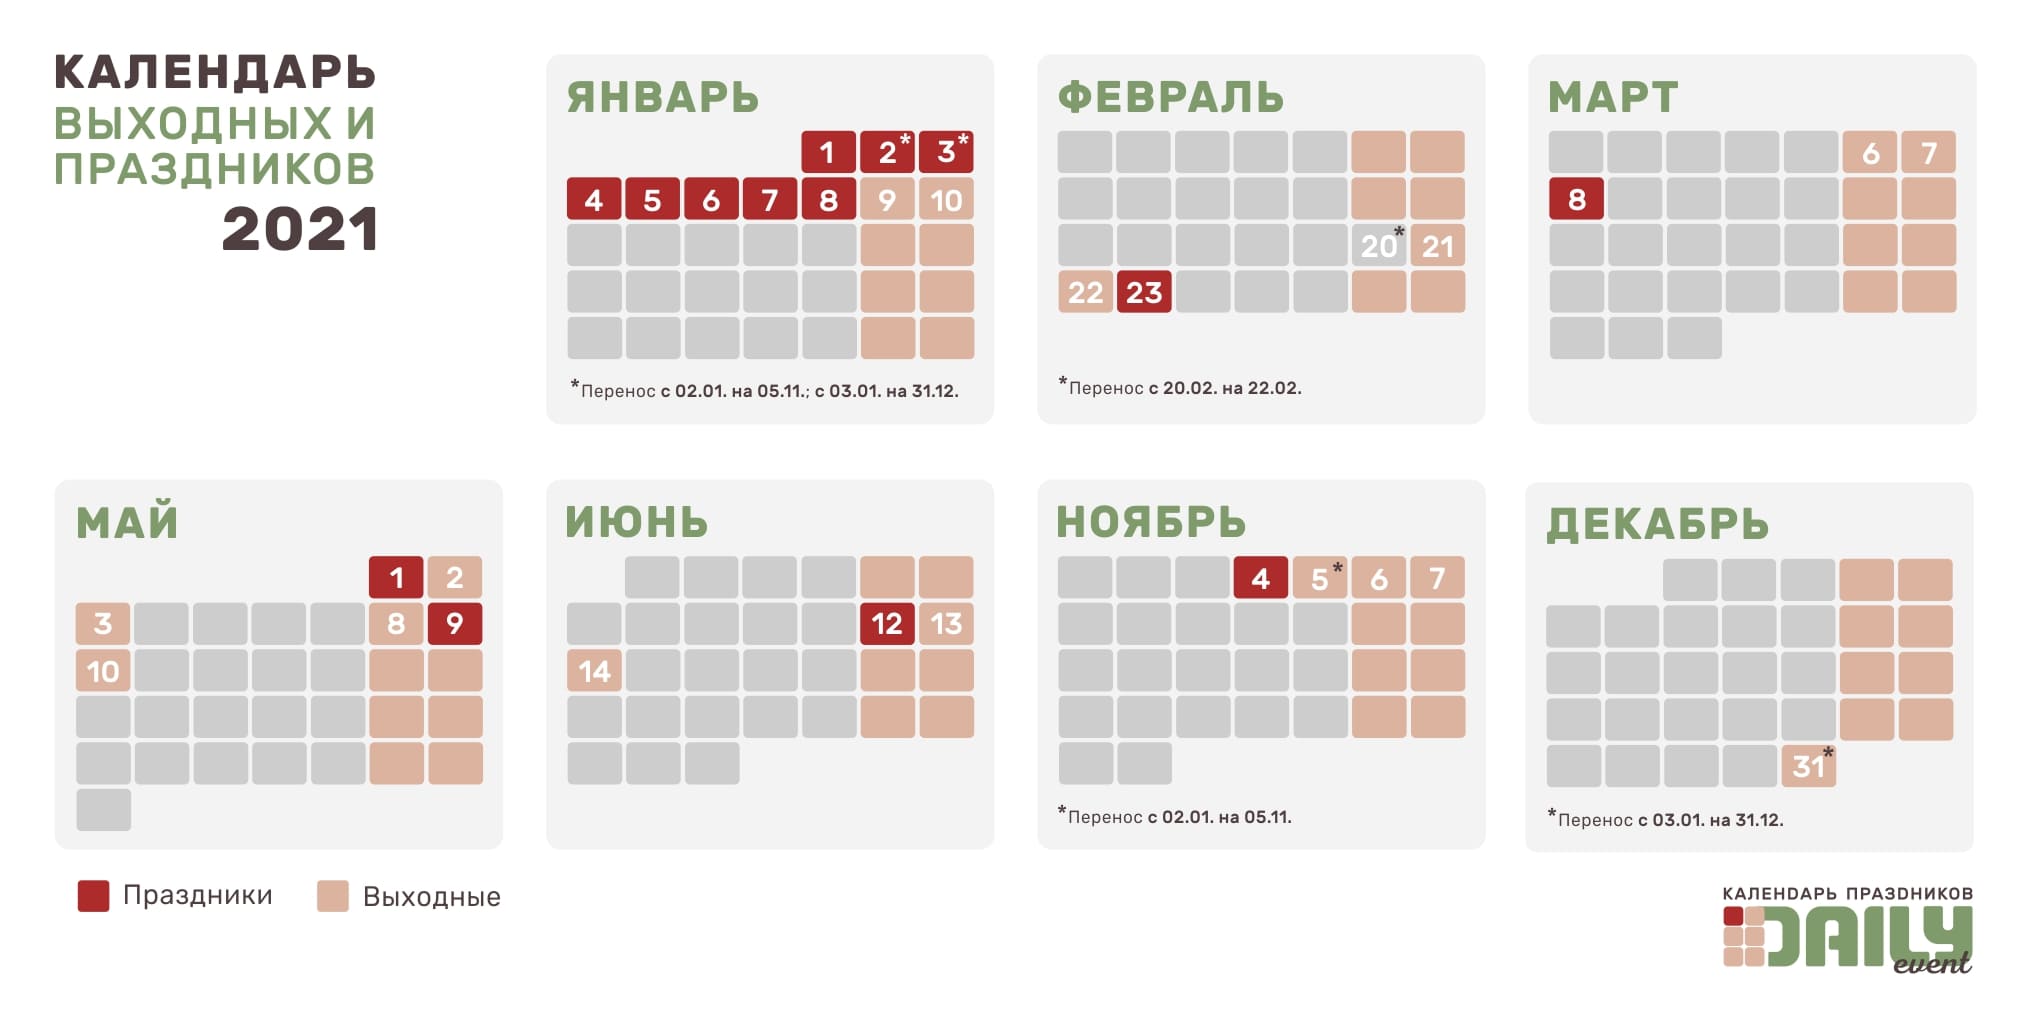 Производственный календарь на 2022 год в татарстане с праздниками и выходными